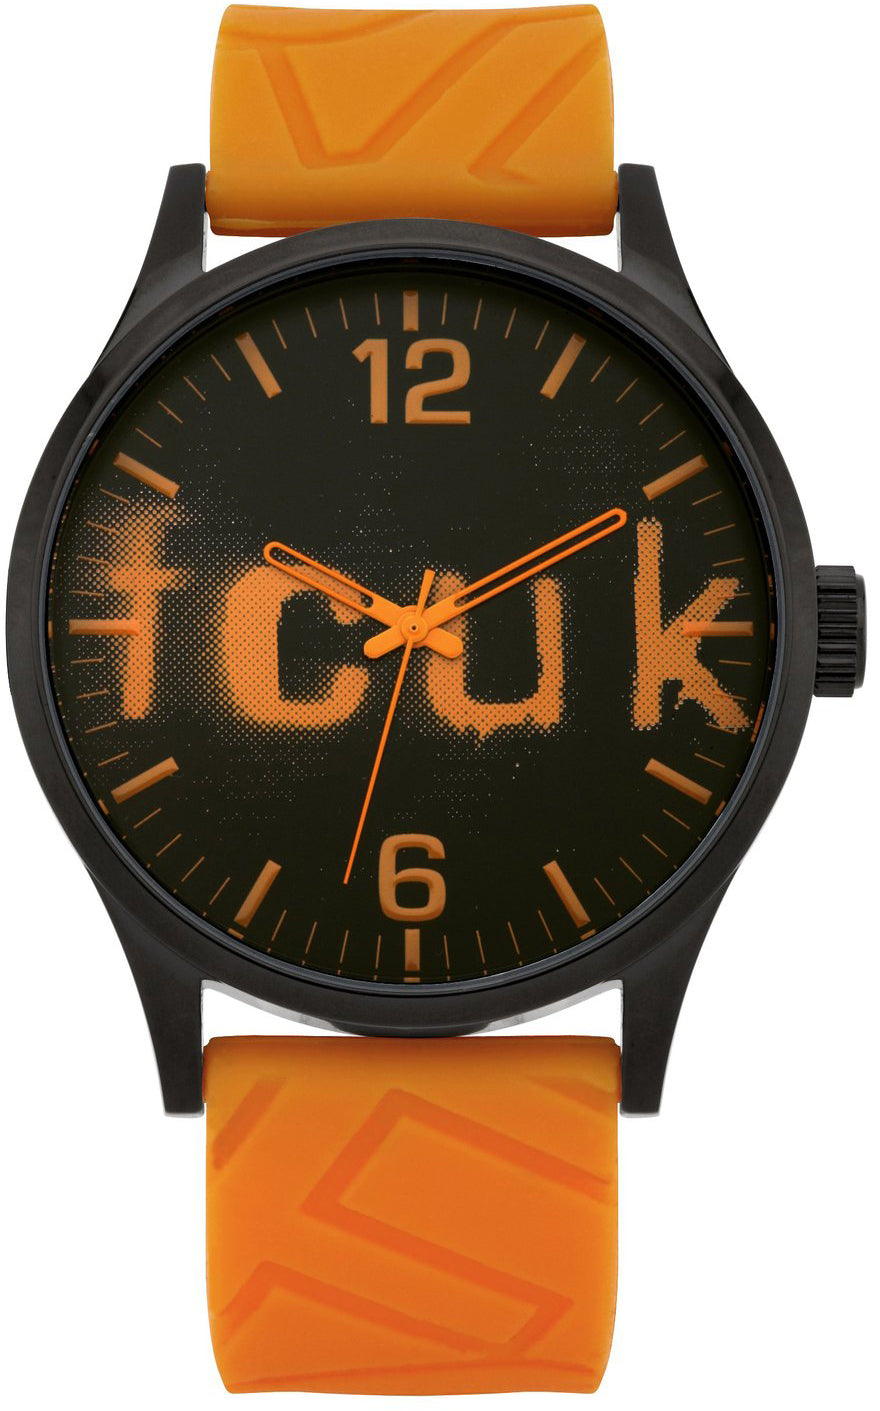 FCUK MEN'S watch model FC1096OO - Watch Universe Int 